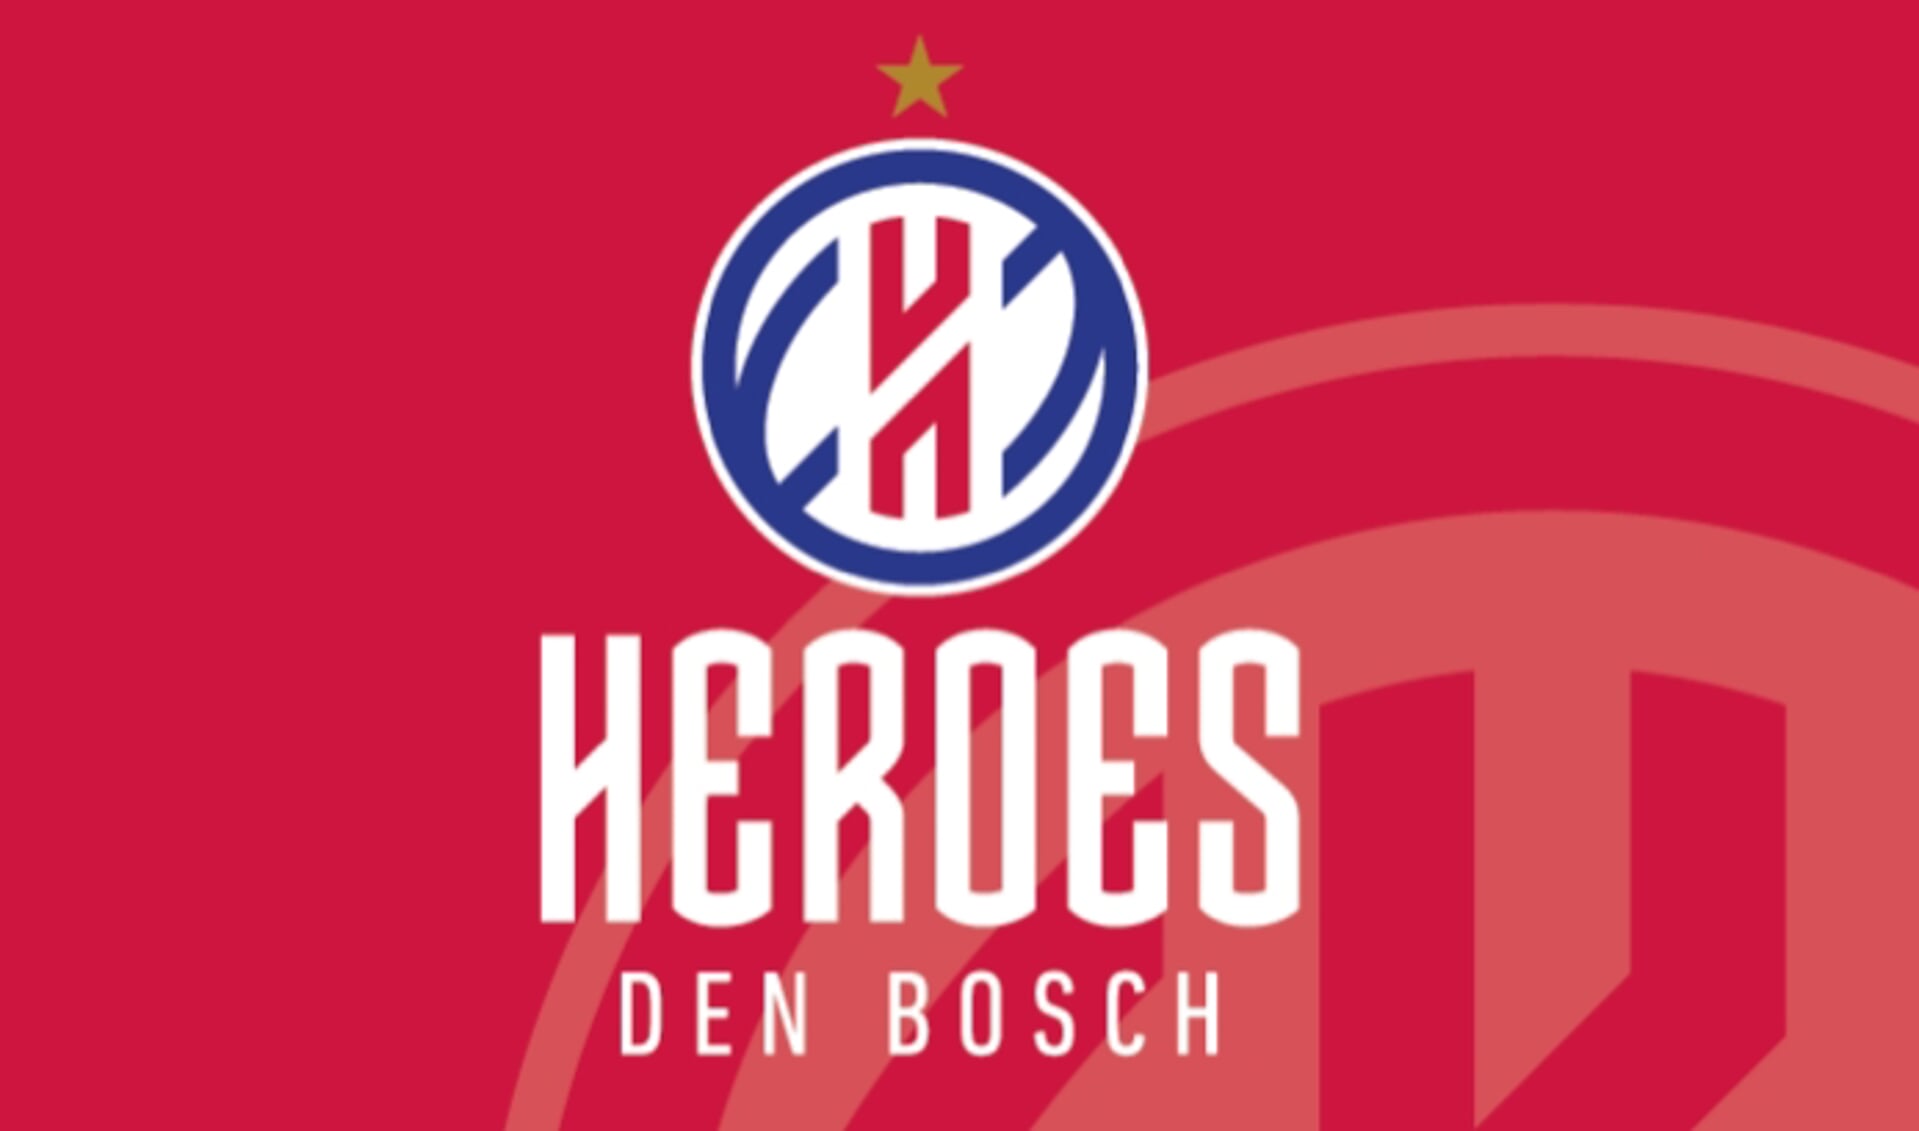 Heroes Den Bosch heeft zich geplaatst voor de halve finale van de nationale play-offs.